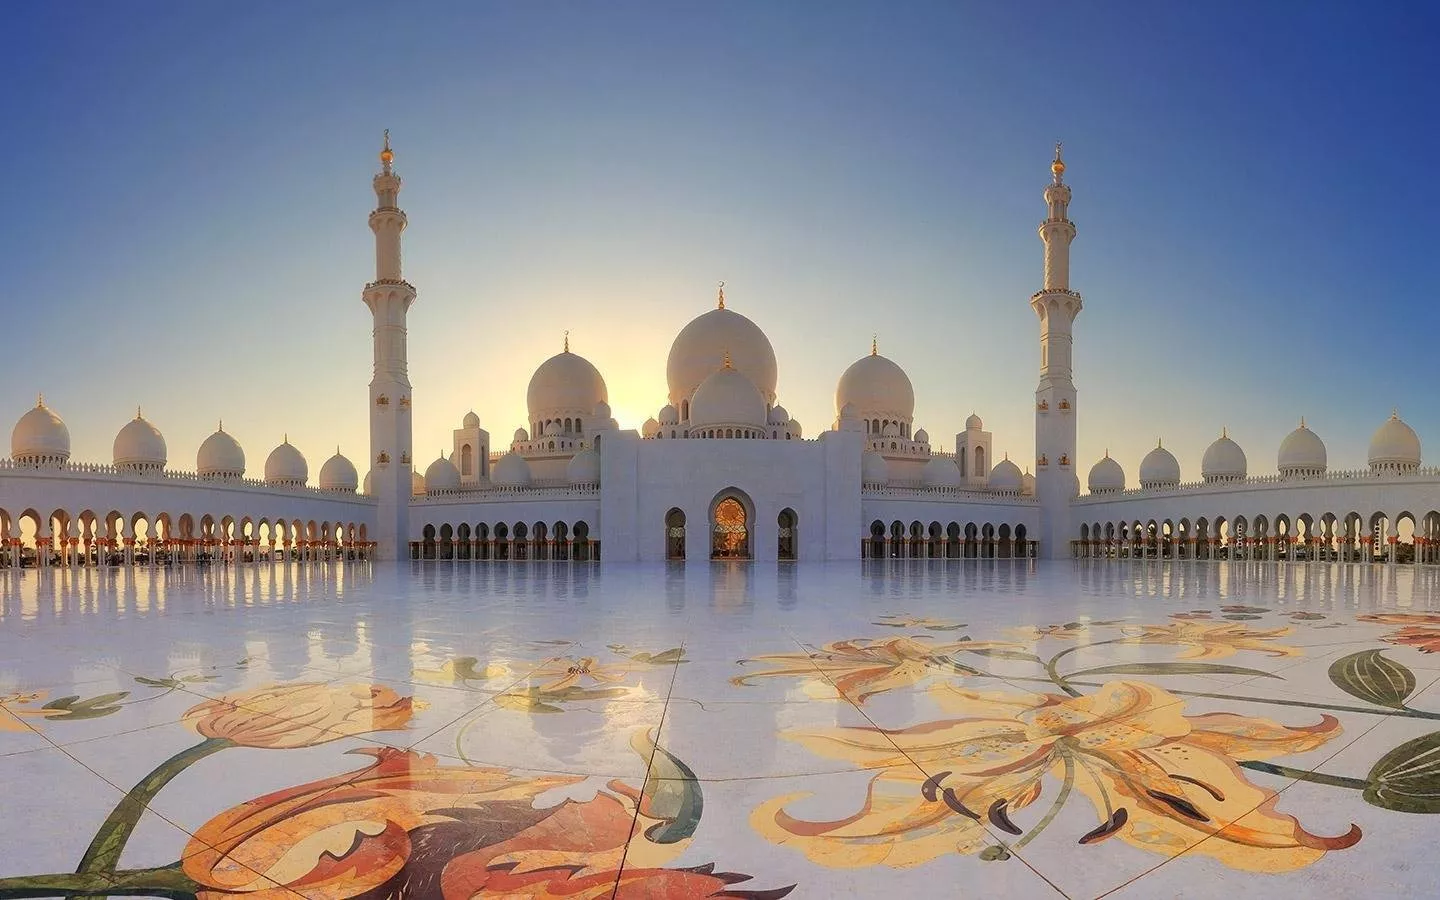 بمناسبة اليوم الوطني الاماراتي: 50 صورة تكشف مدى جمال الامارات عبر السنين